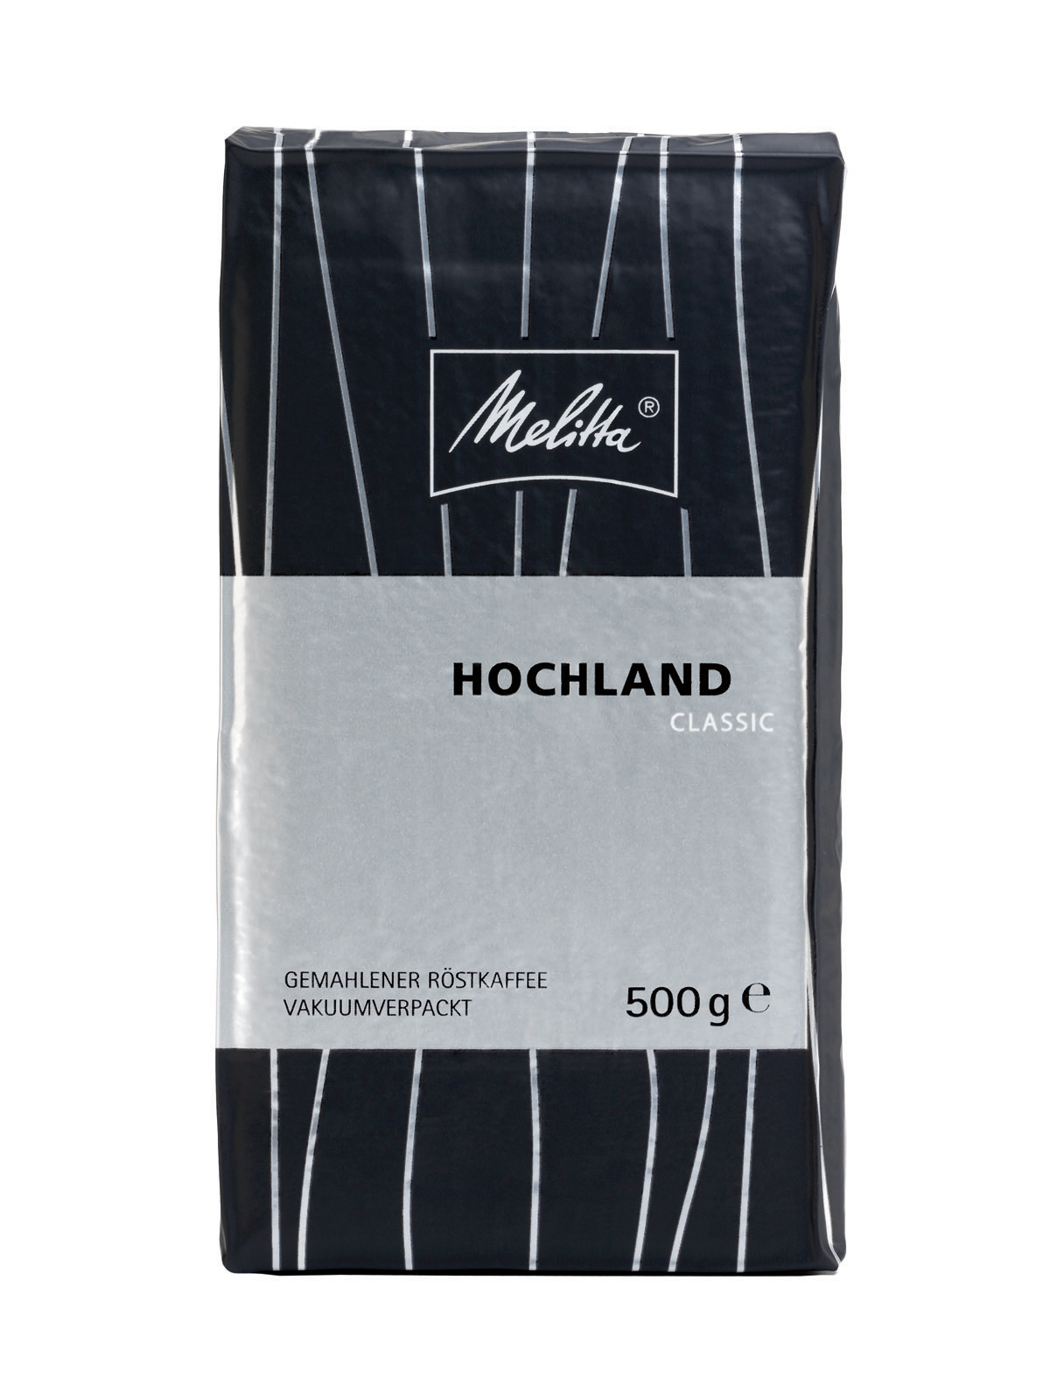 Melitta-Kaffee HOCHLAND - Inhalt 500 g - gemahlen vollmundiges Aroma und würzig-